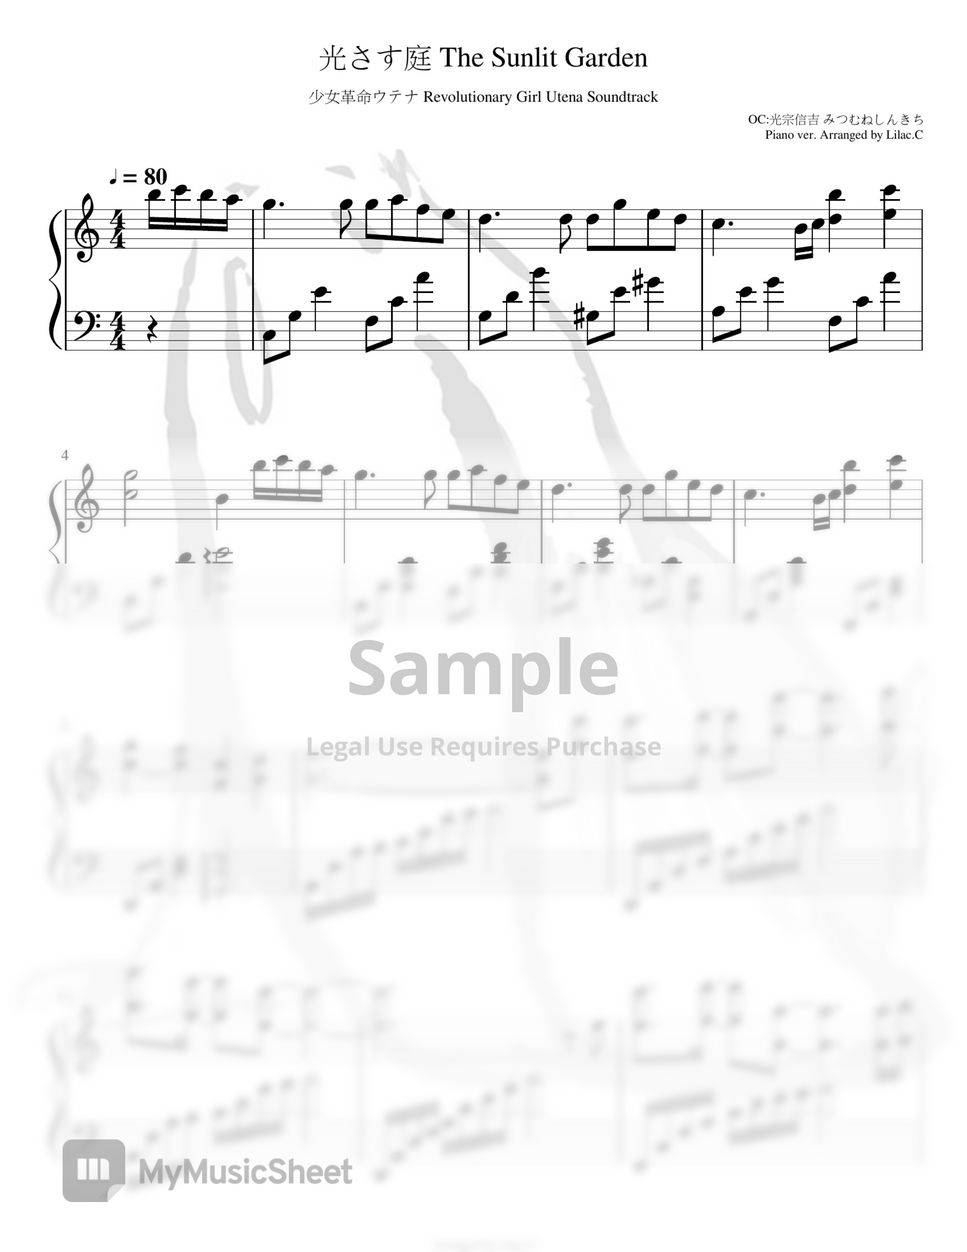 光宗信吉 - 光さす庭-少女革命ウテナ Soundtrack (Anime Song Sheet Music Piano ver) by Lilac.C